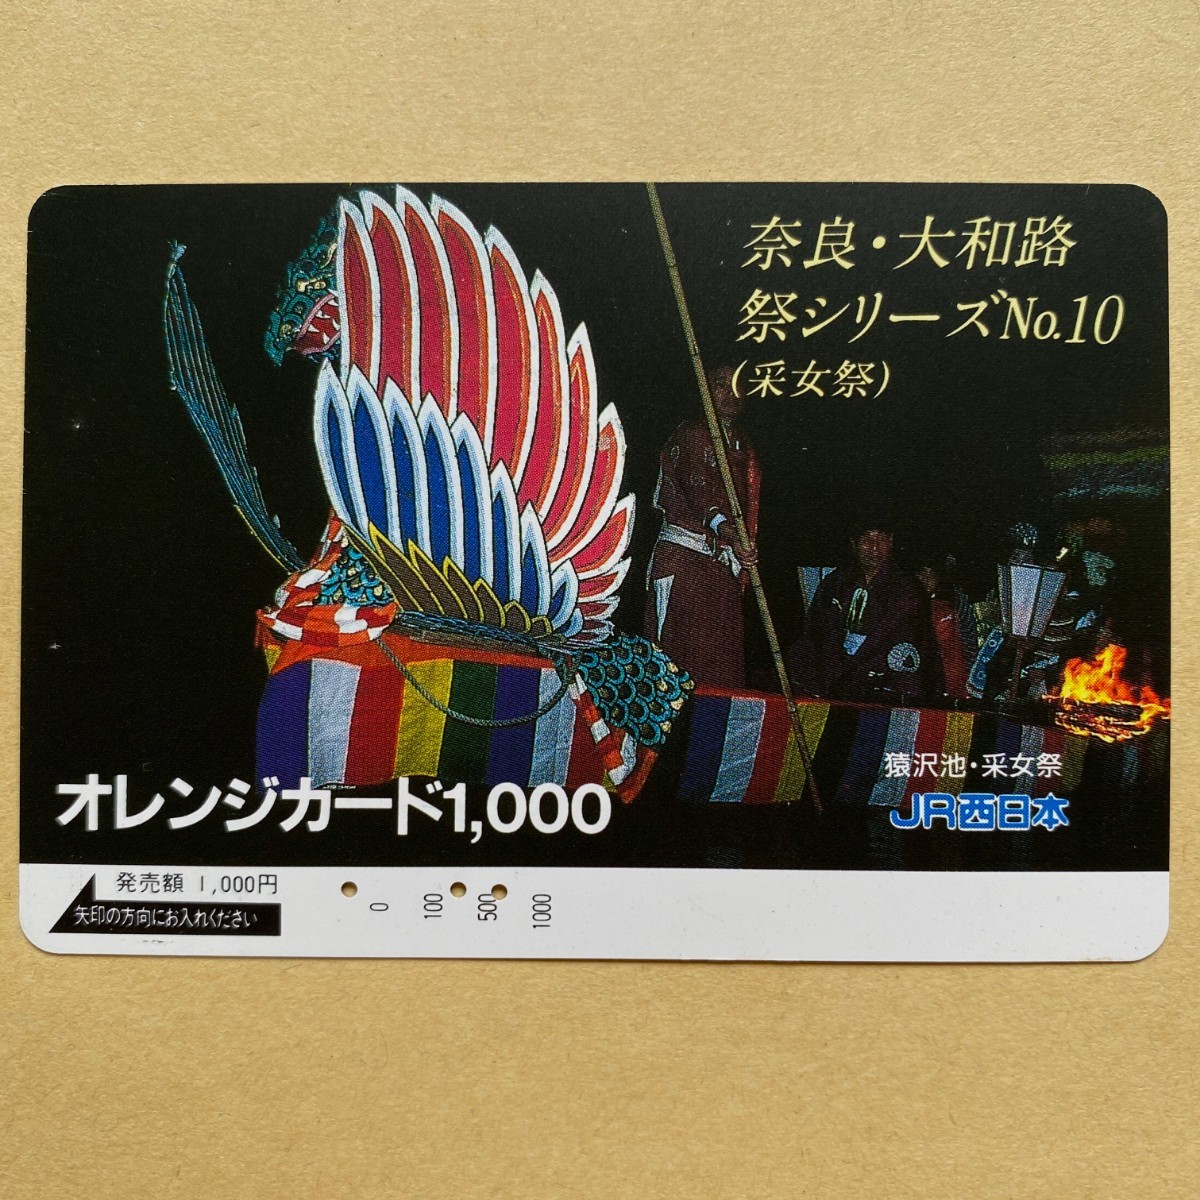 【使用済】 オレンジカード JR西日本 奈良・大和路 祭シリーズ No.10 (采女祭)_画像1